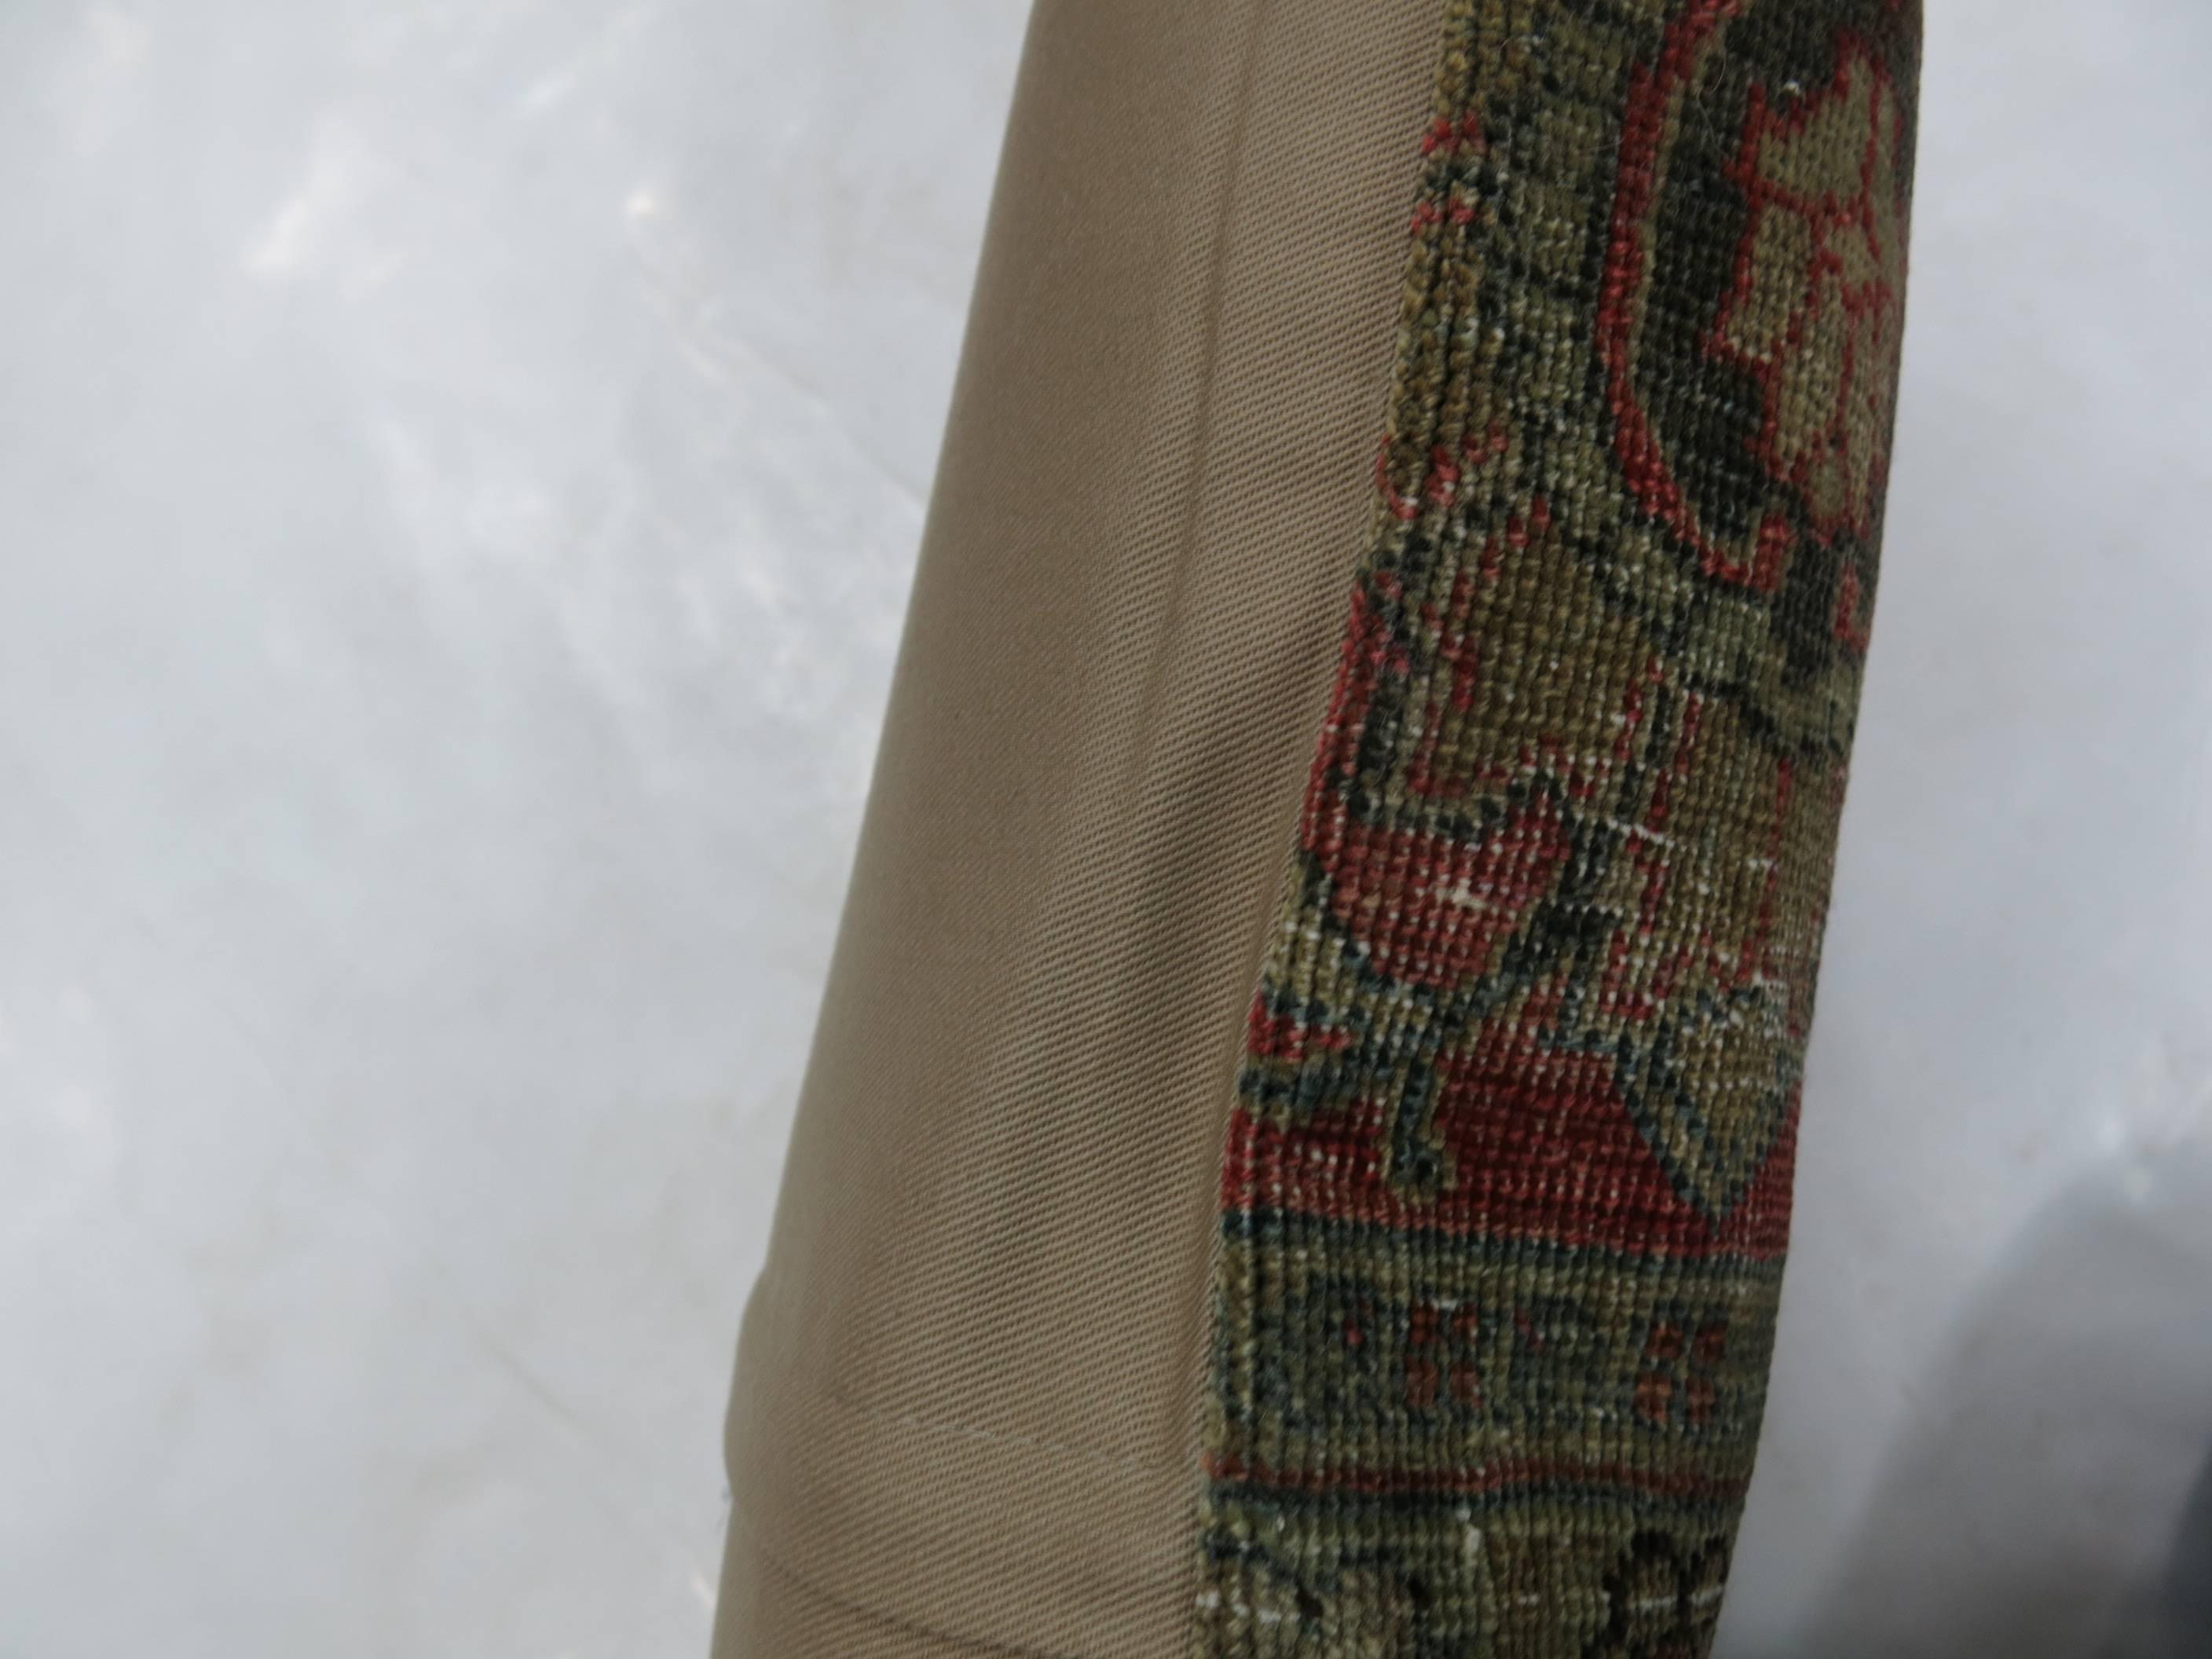 Lendenkissen aus einem persischen Täbriz-Teppich

Maße: 15'' x 21''.